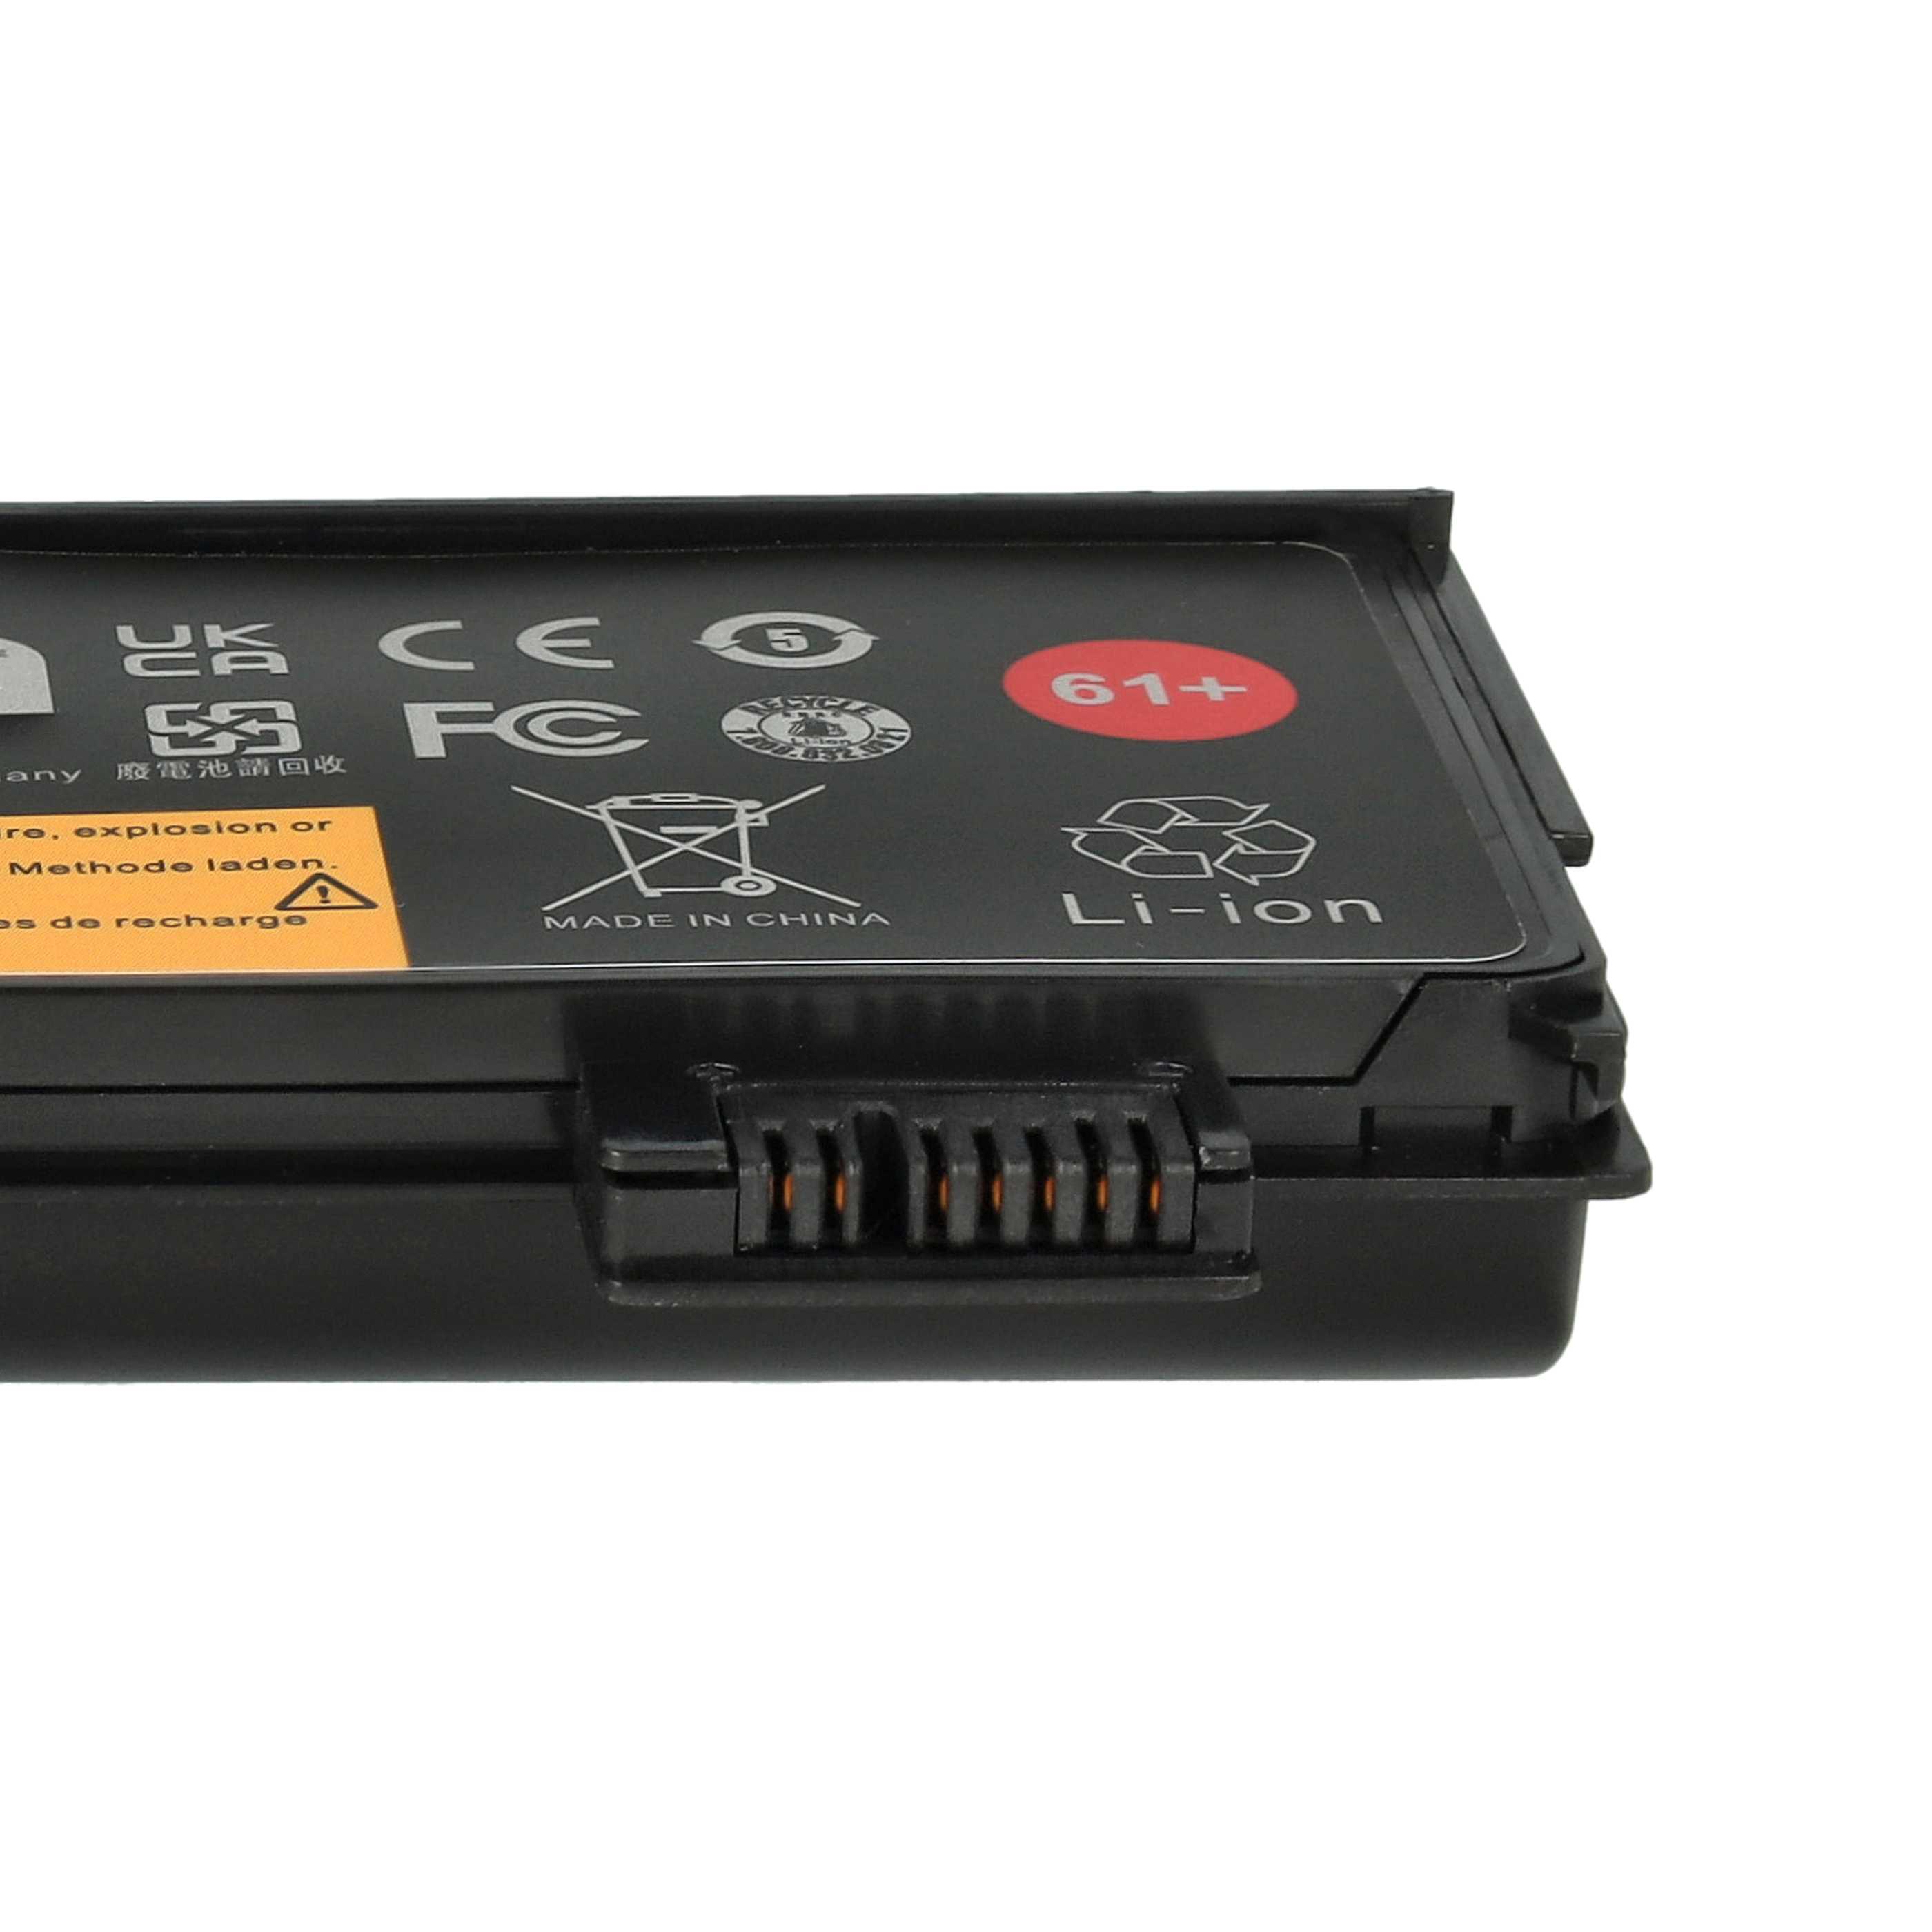 Batterie remplace Lenovo 01AV422, 01AV423, 01AV424 pour ordinateur portable - 4400mAh 11,1V Li-ion, noir